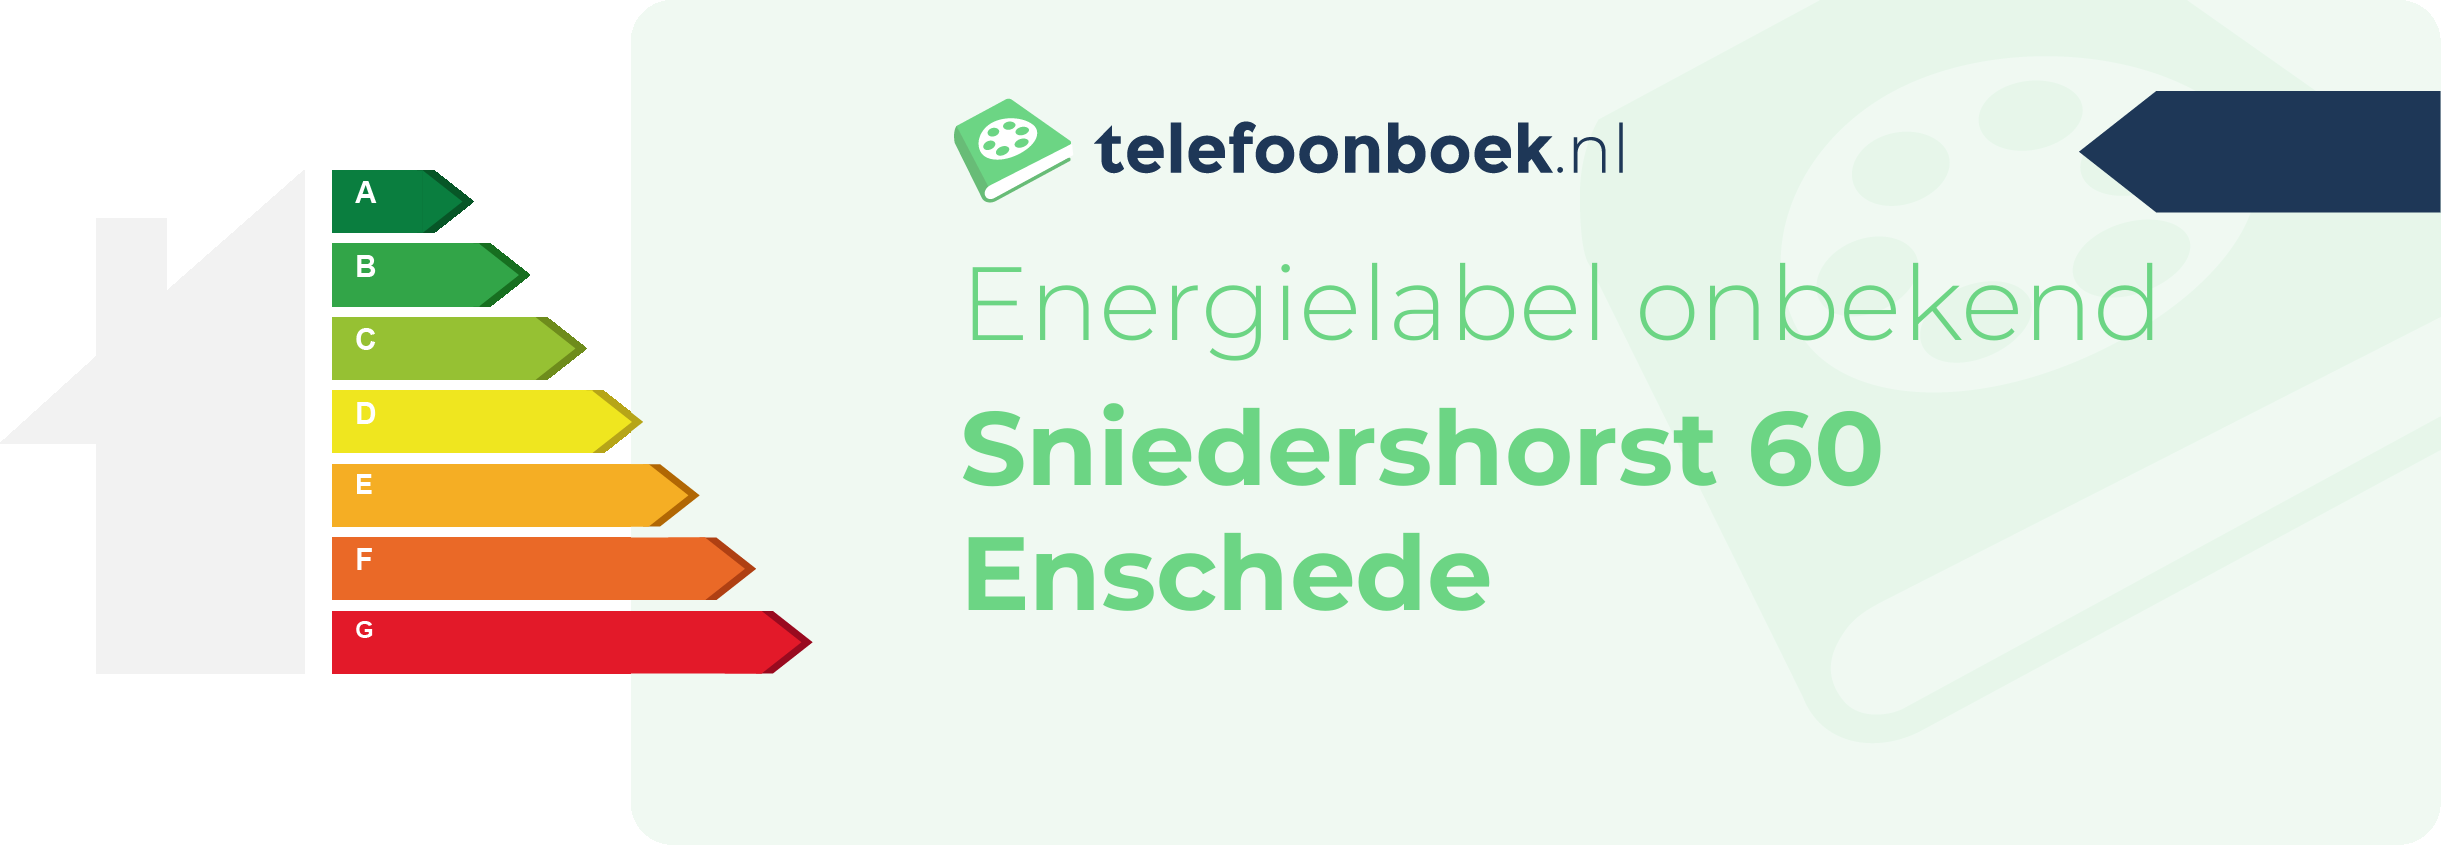 Energielabel Sniedershorst 60 Enschede